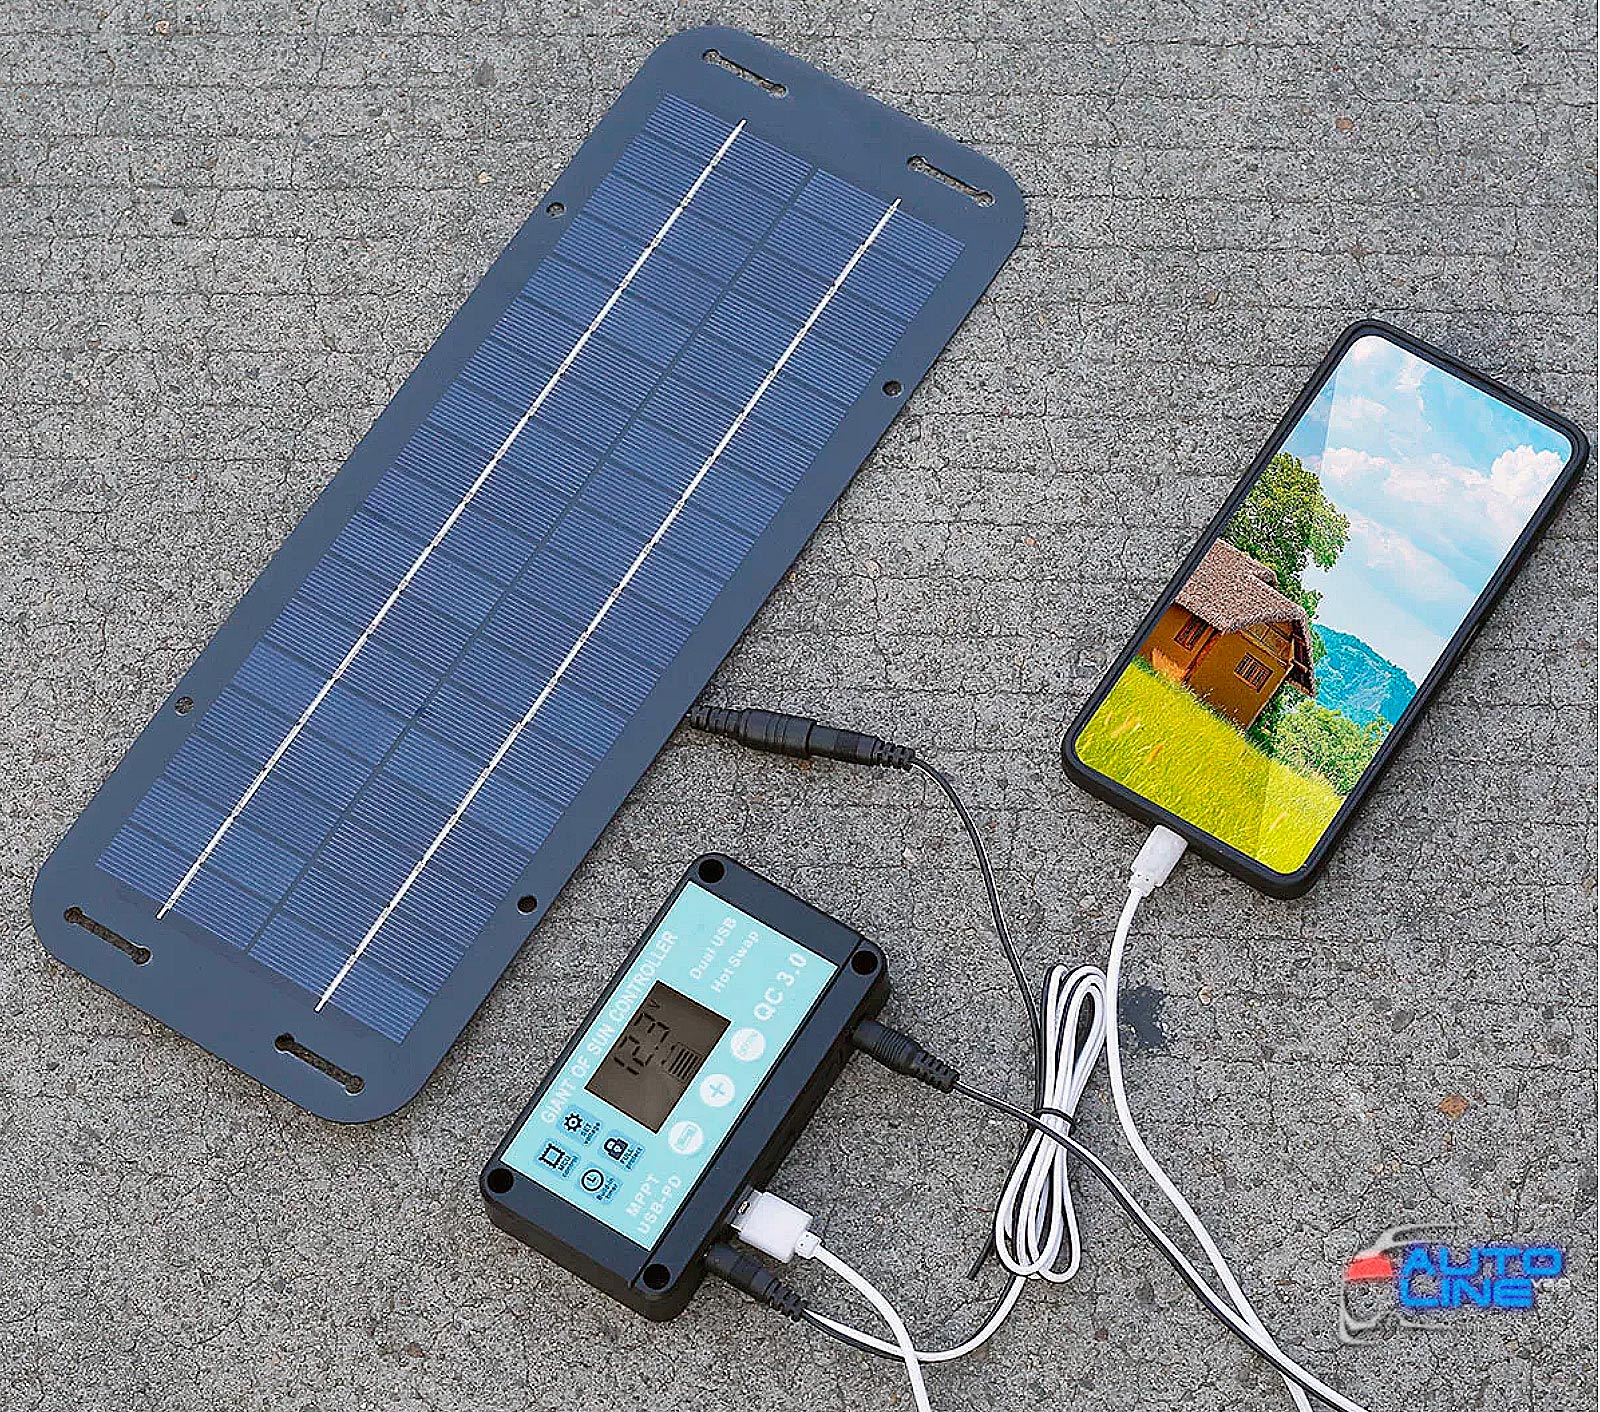 B-Power Solar Charger Kit 12-18V V1 With Controller 30A - портативное солнечное зарядное устройство для автоаккумулятора, телефонов и ноутбуков